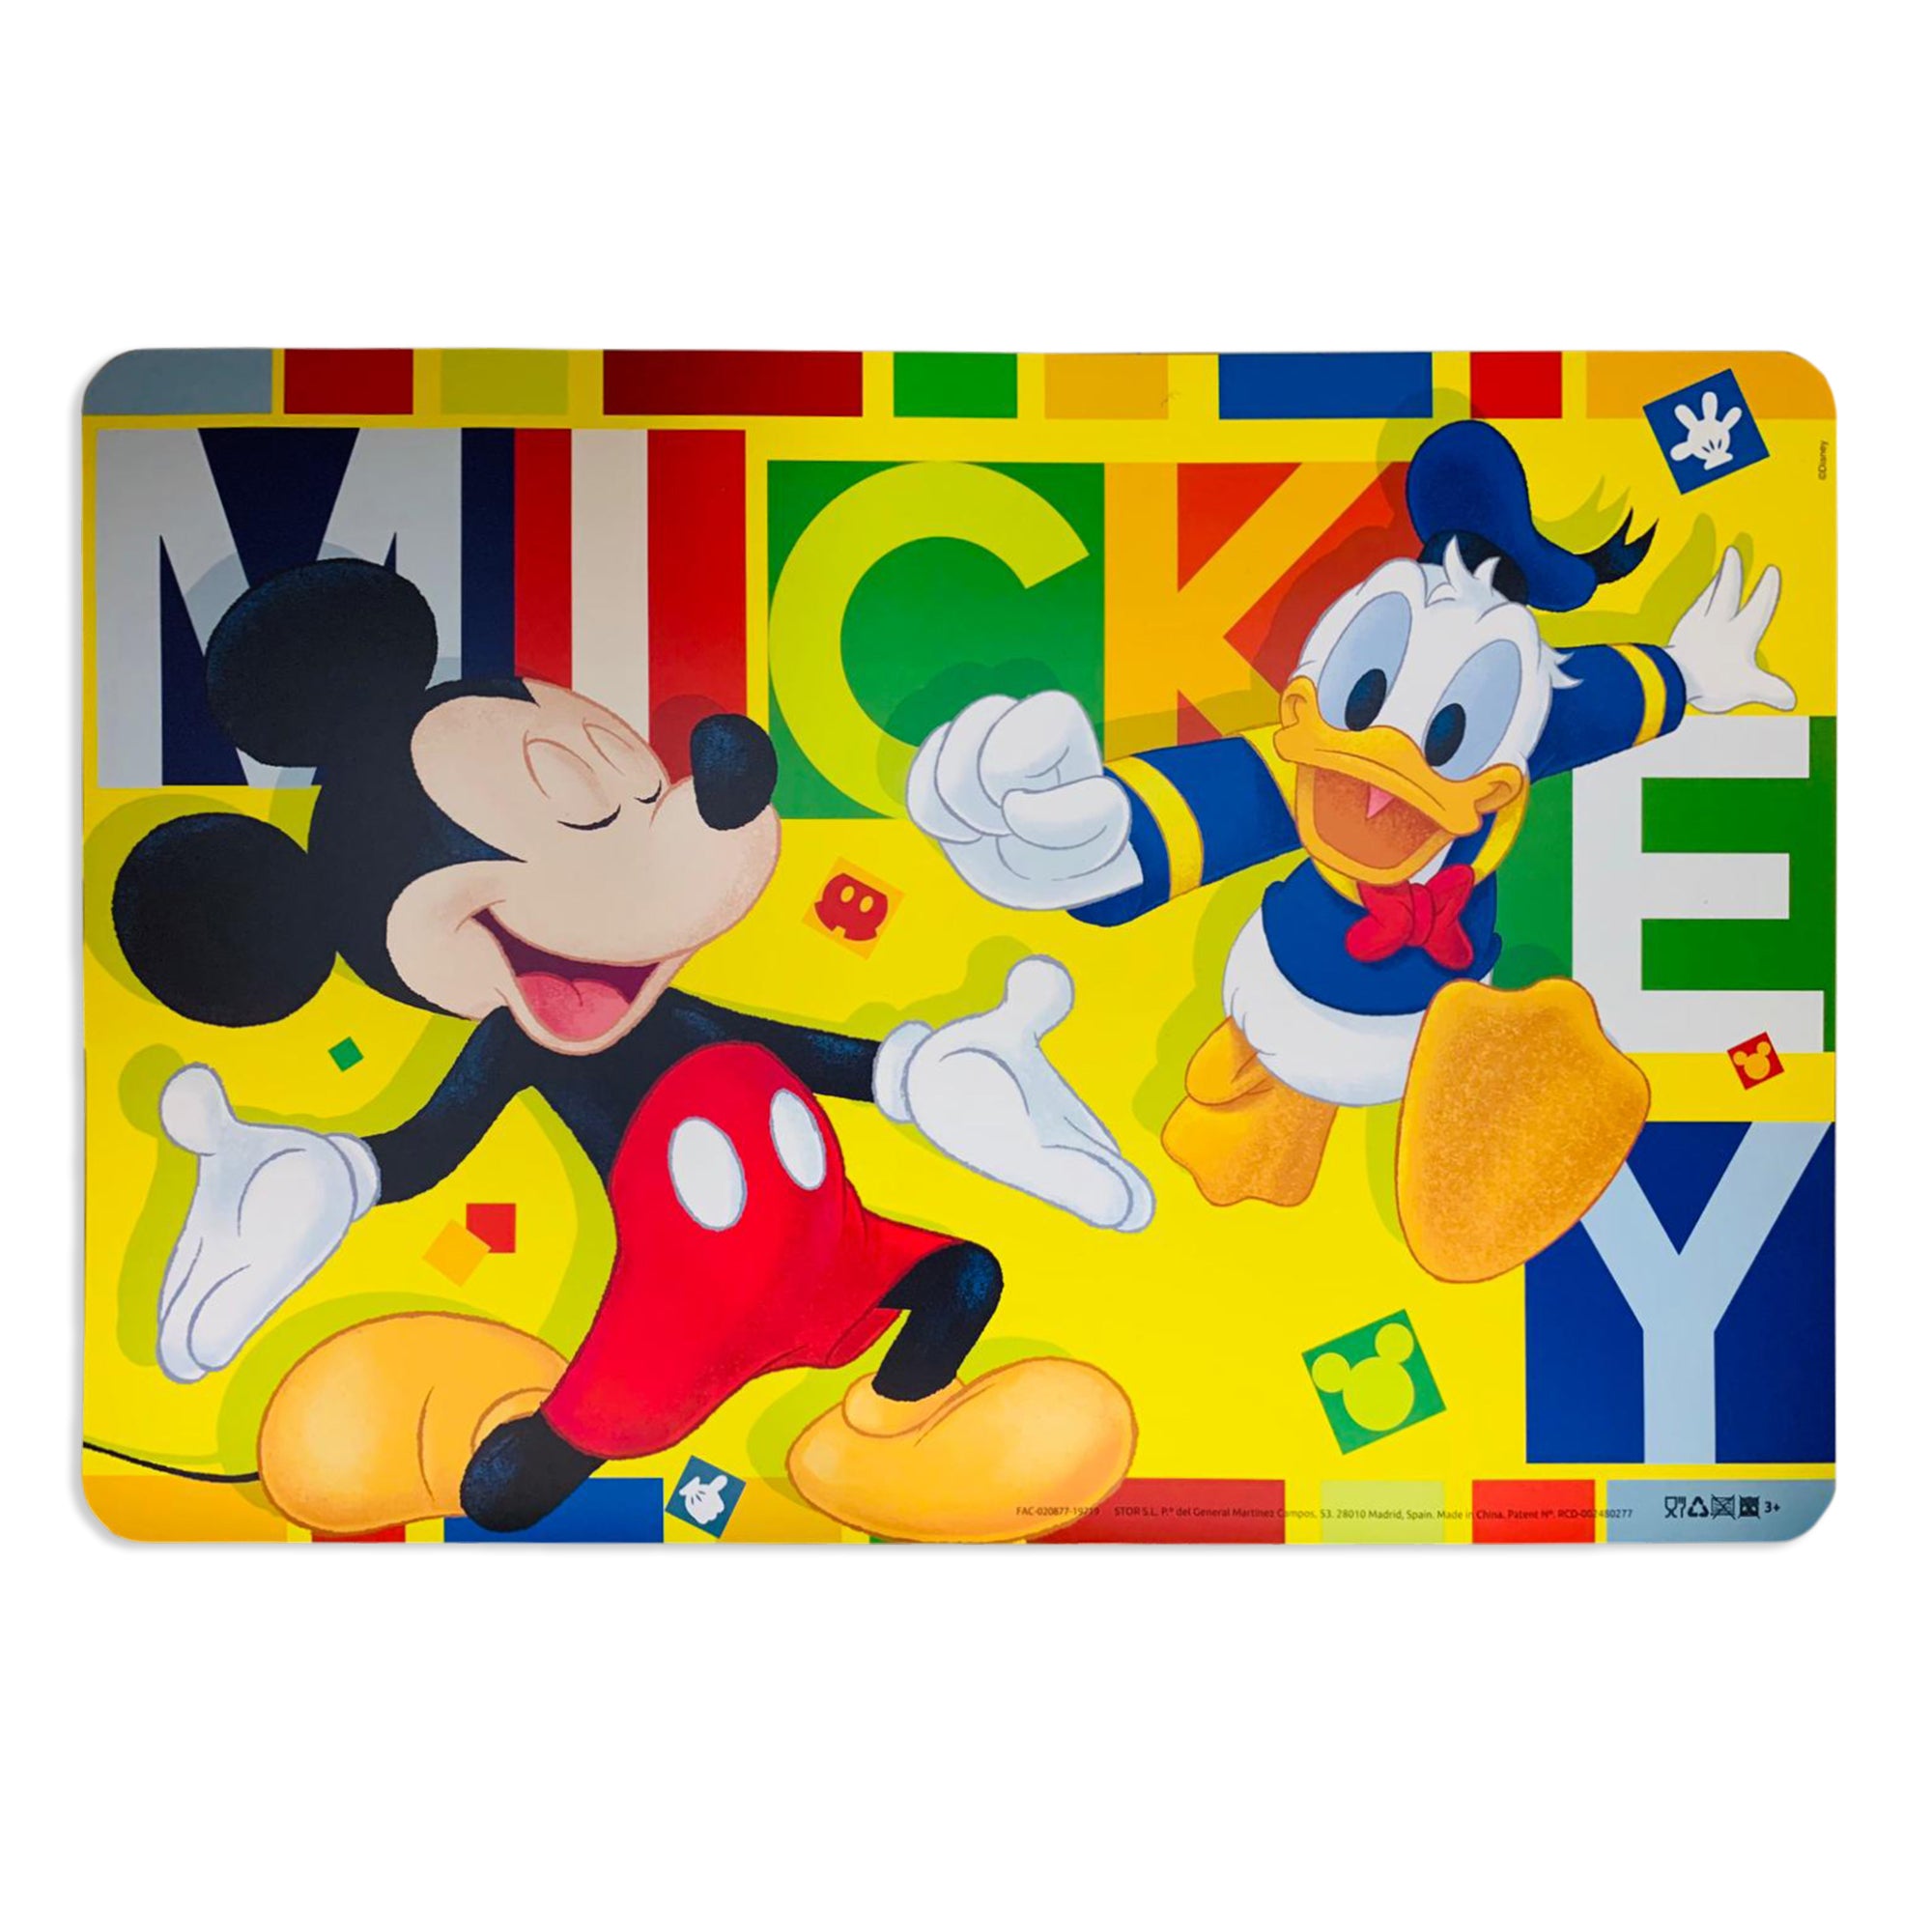 Tovaglietta americana ufficiale Disney Mickey Mouse colazione asilo bimbo 2657